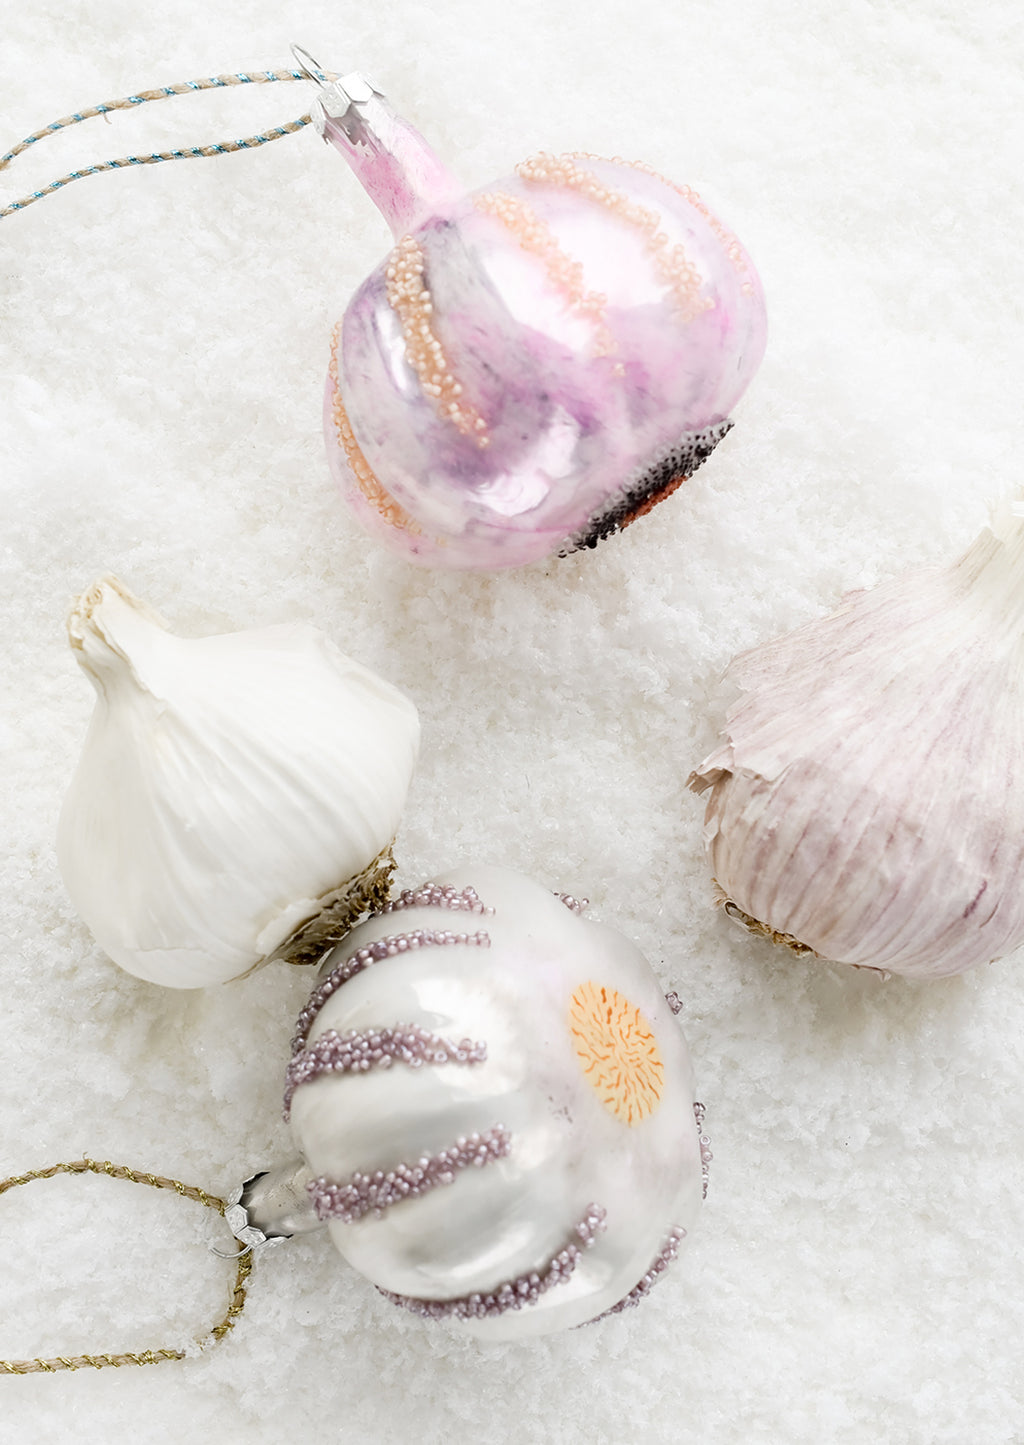 2: Garlic ornaments next to real garlic.